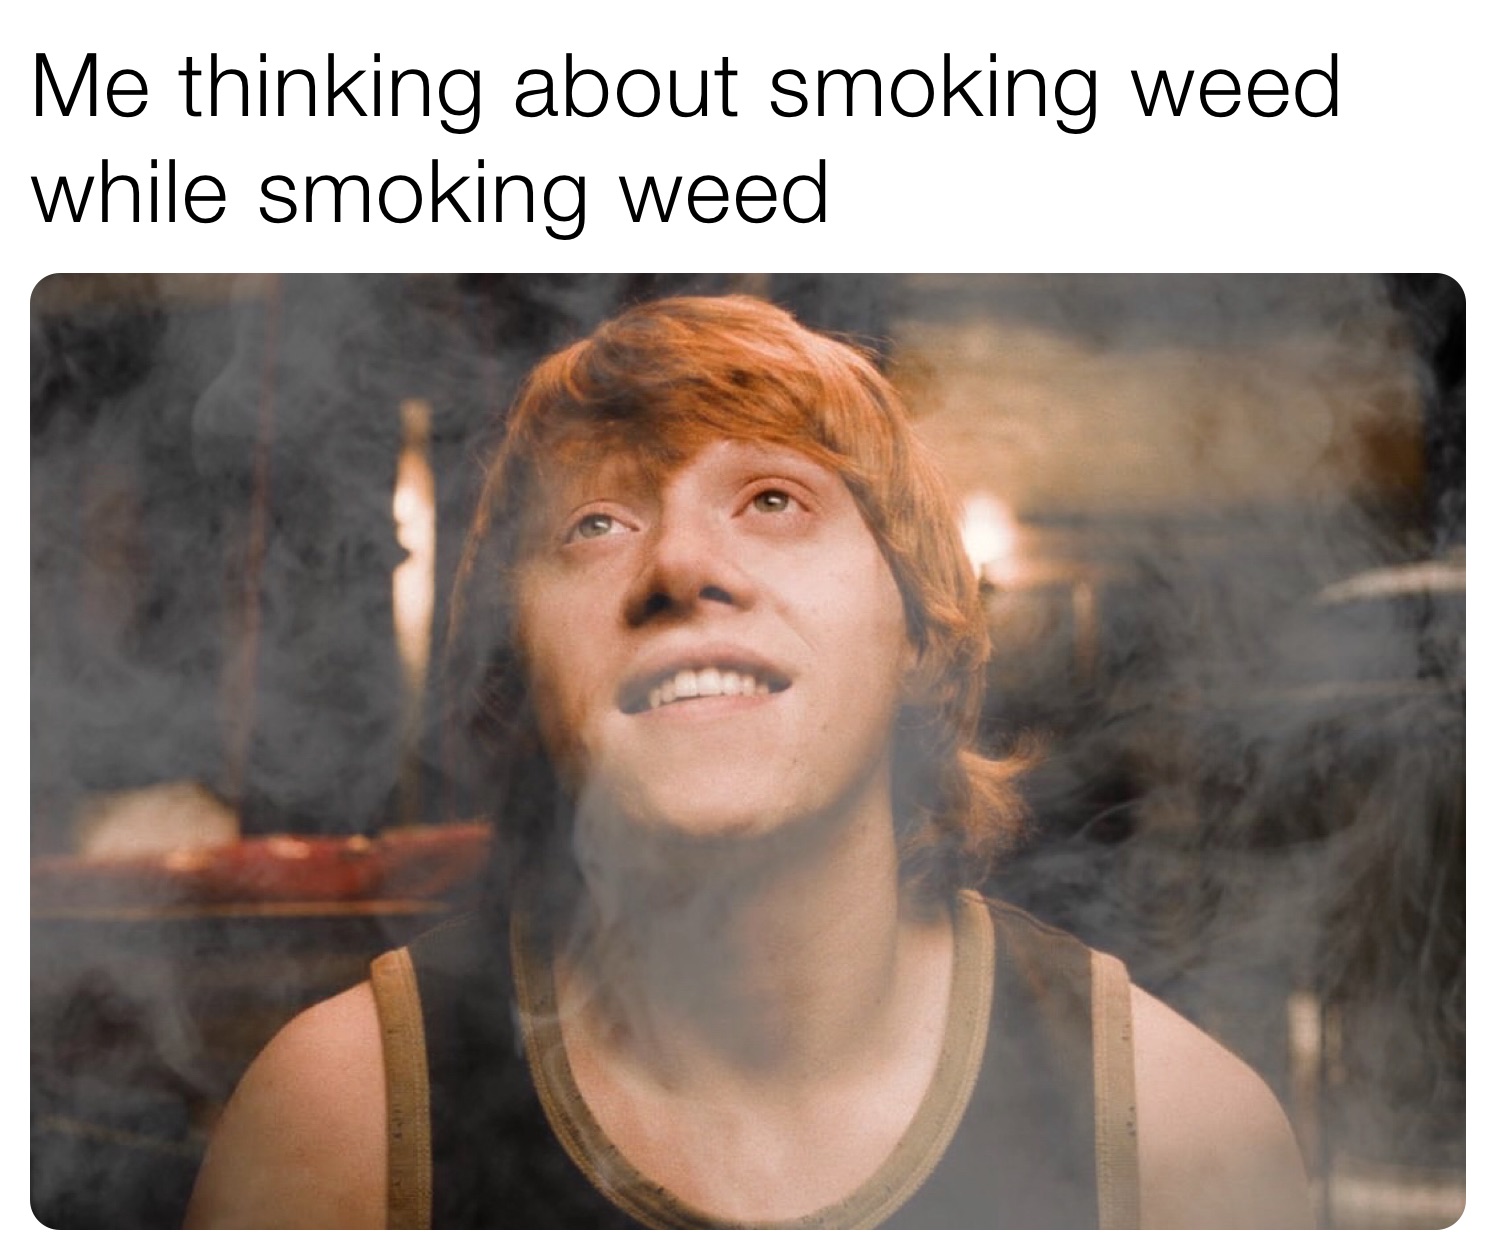 Me thinking about smoking weed while smoking weed